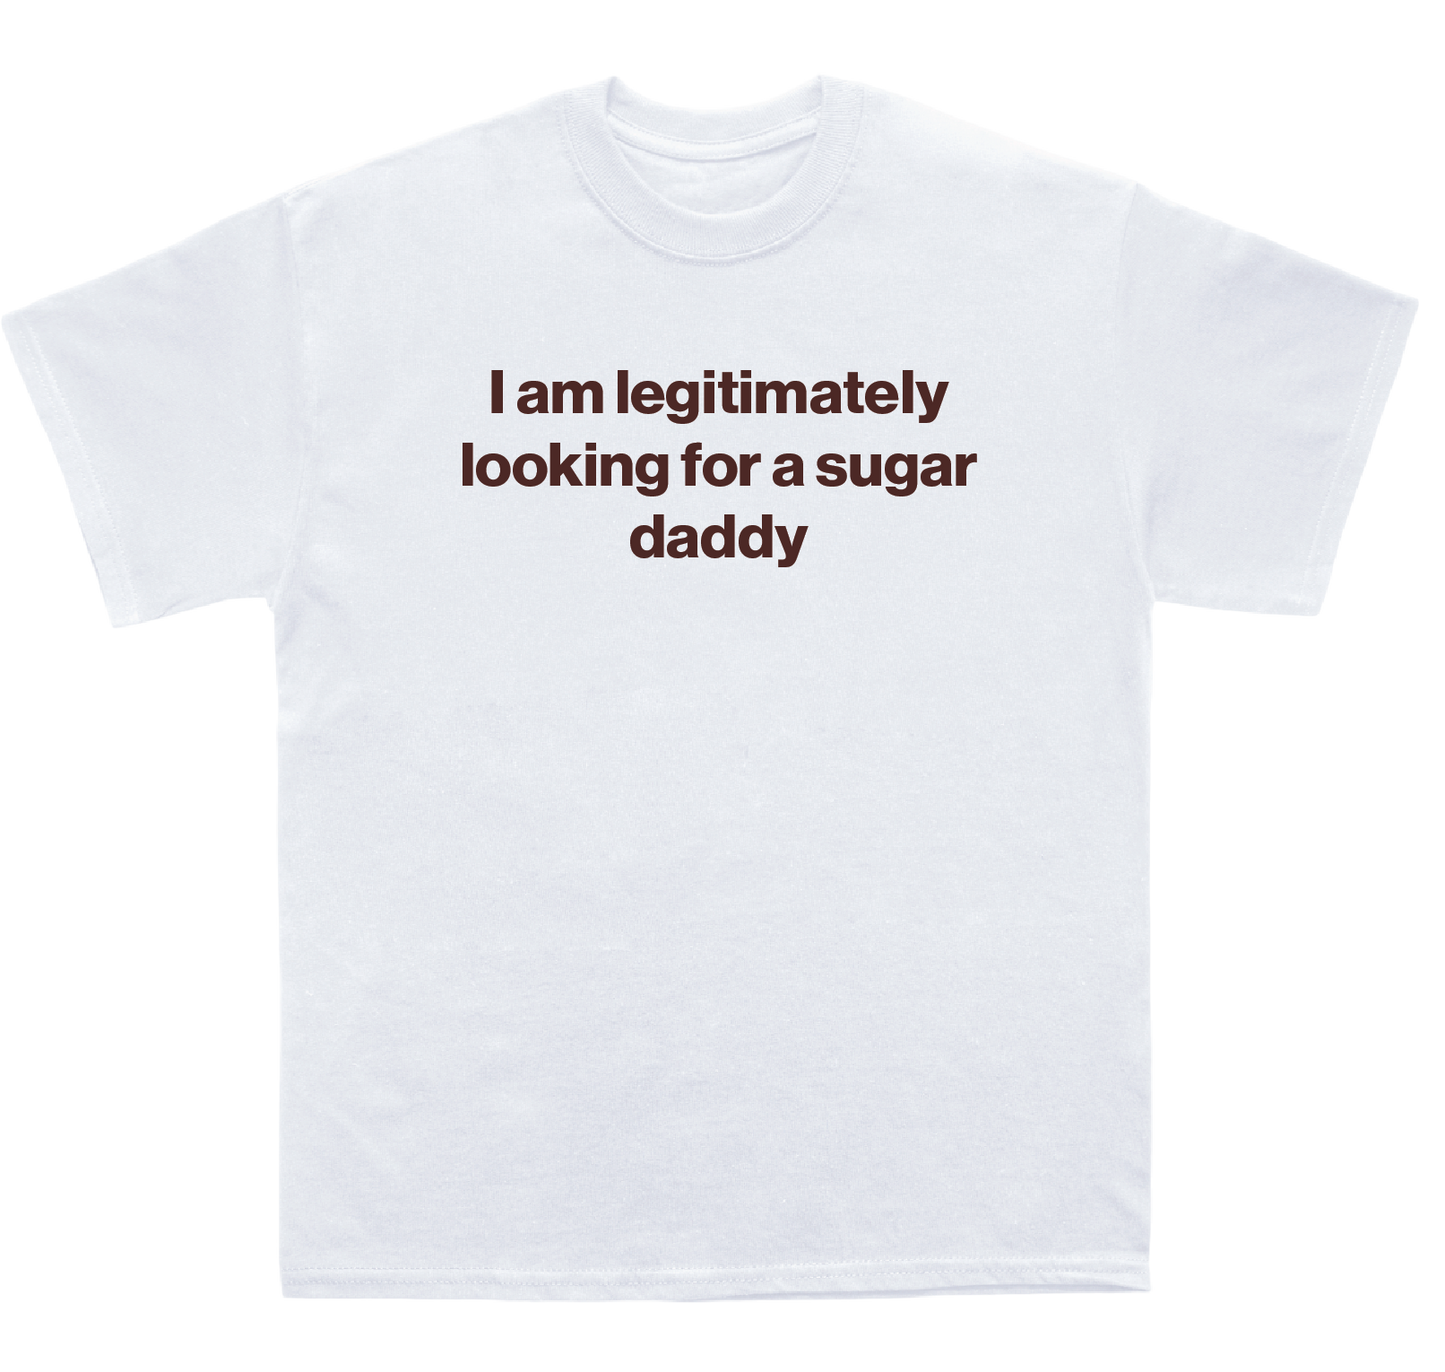 I am legitimately looking for a sugar daddy shirt